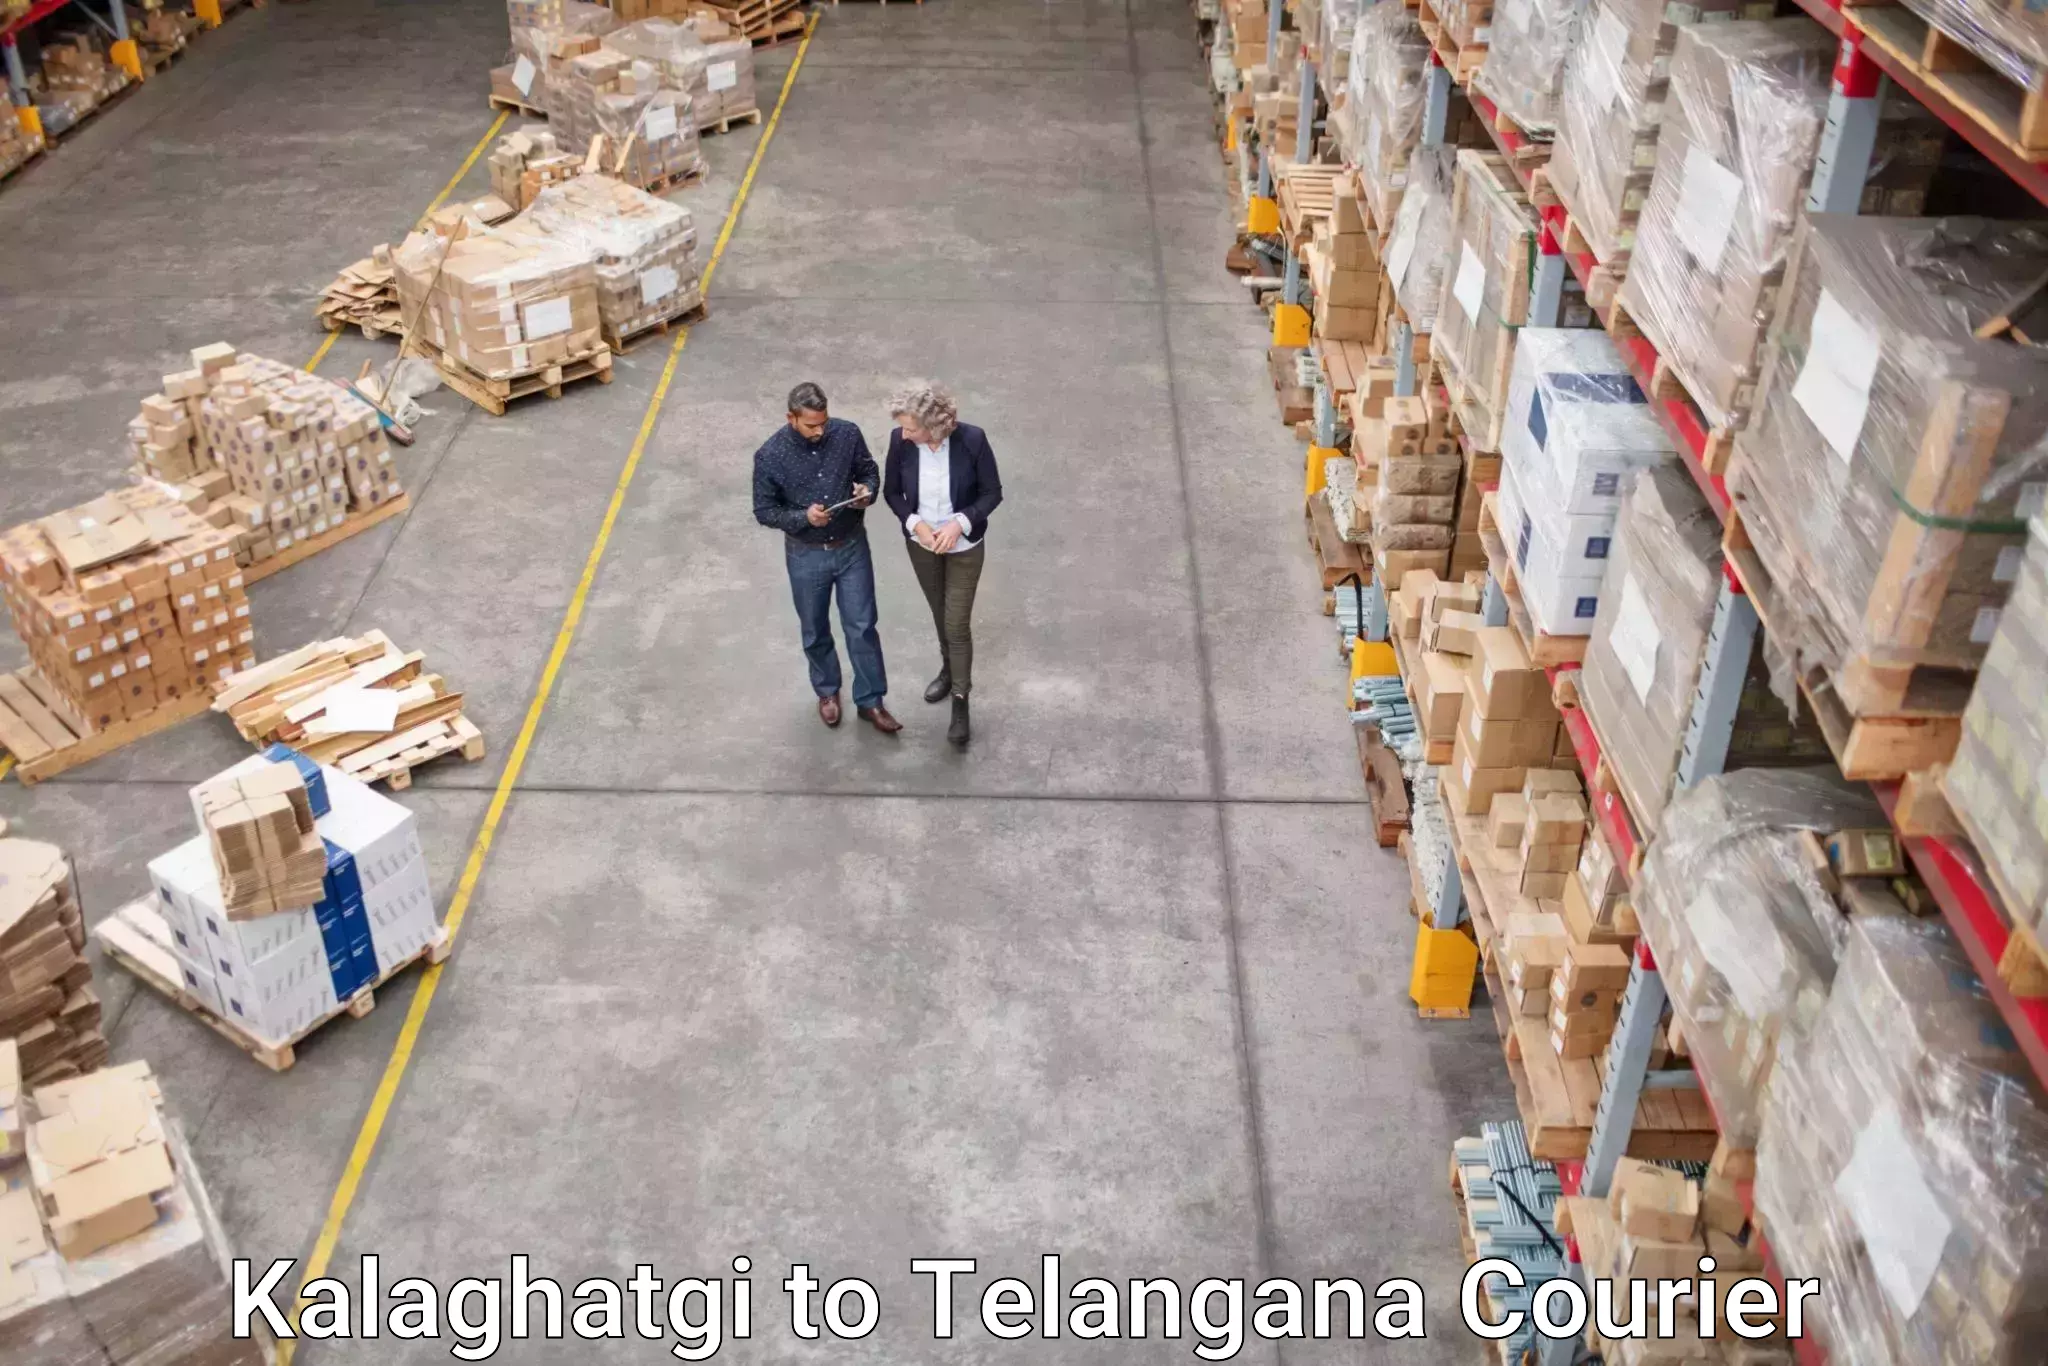 Comprehensive shipping network Kalaghatgi to Bodhan